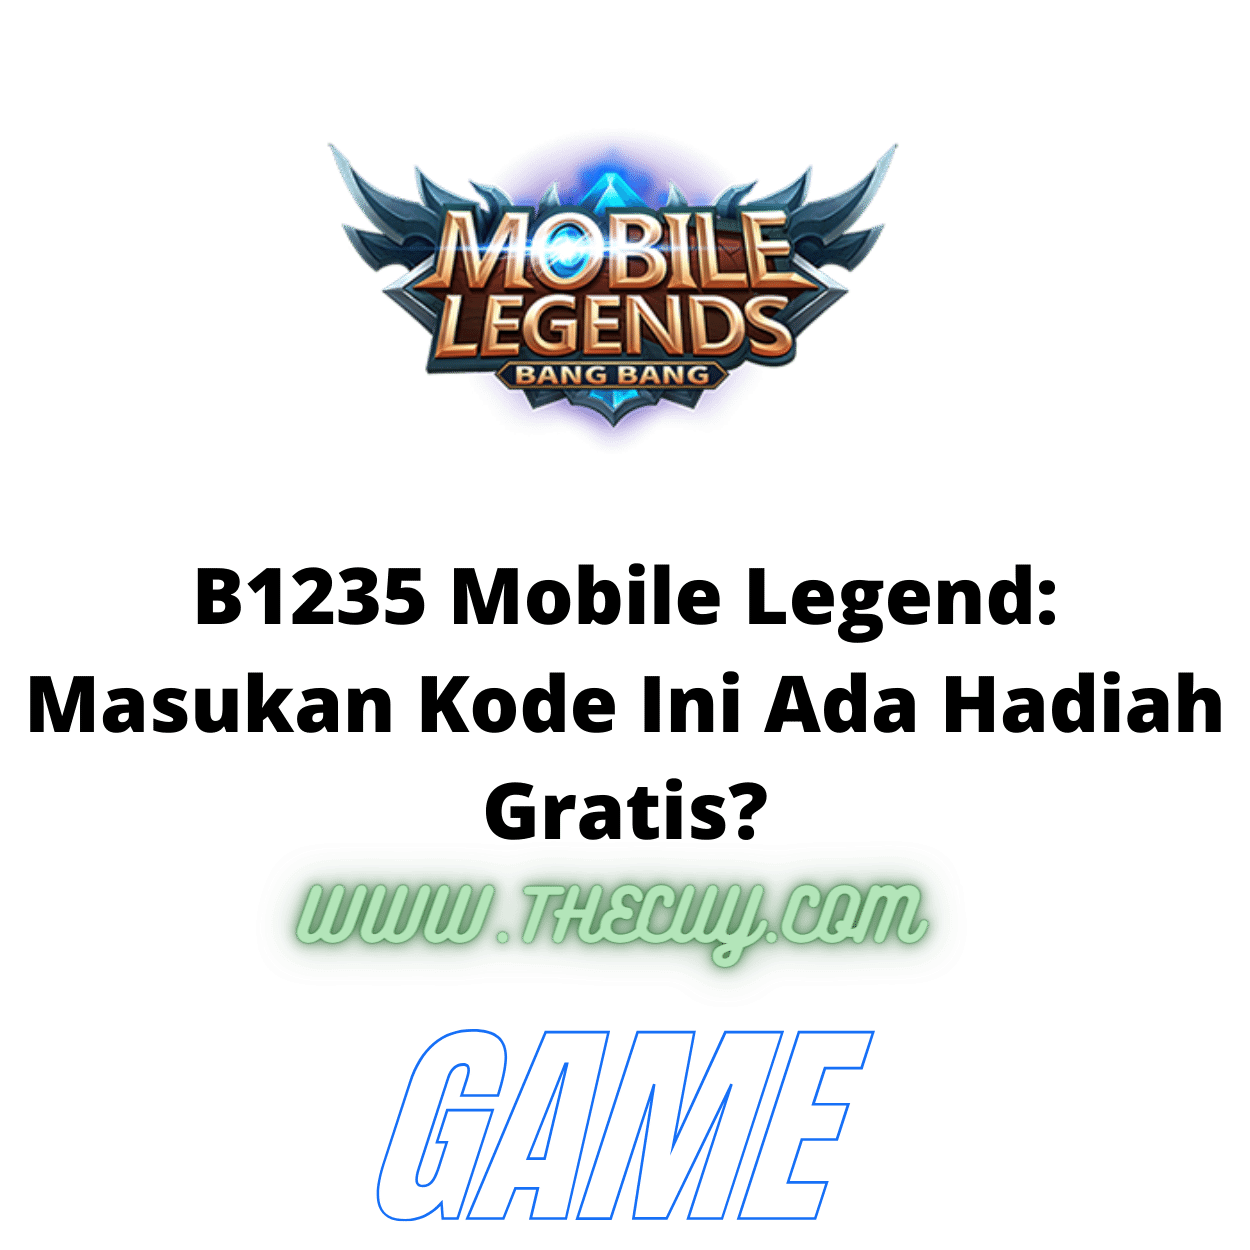 B1235 Mobile Legend: Masukan Kode Ini Ada Hadiah Gratis?